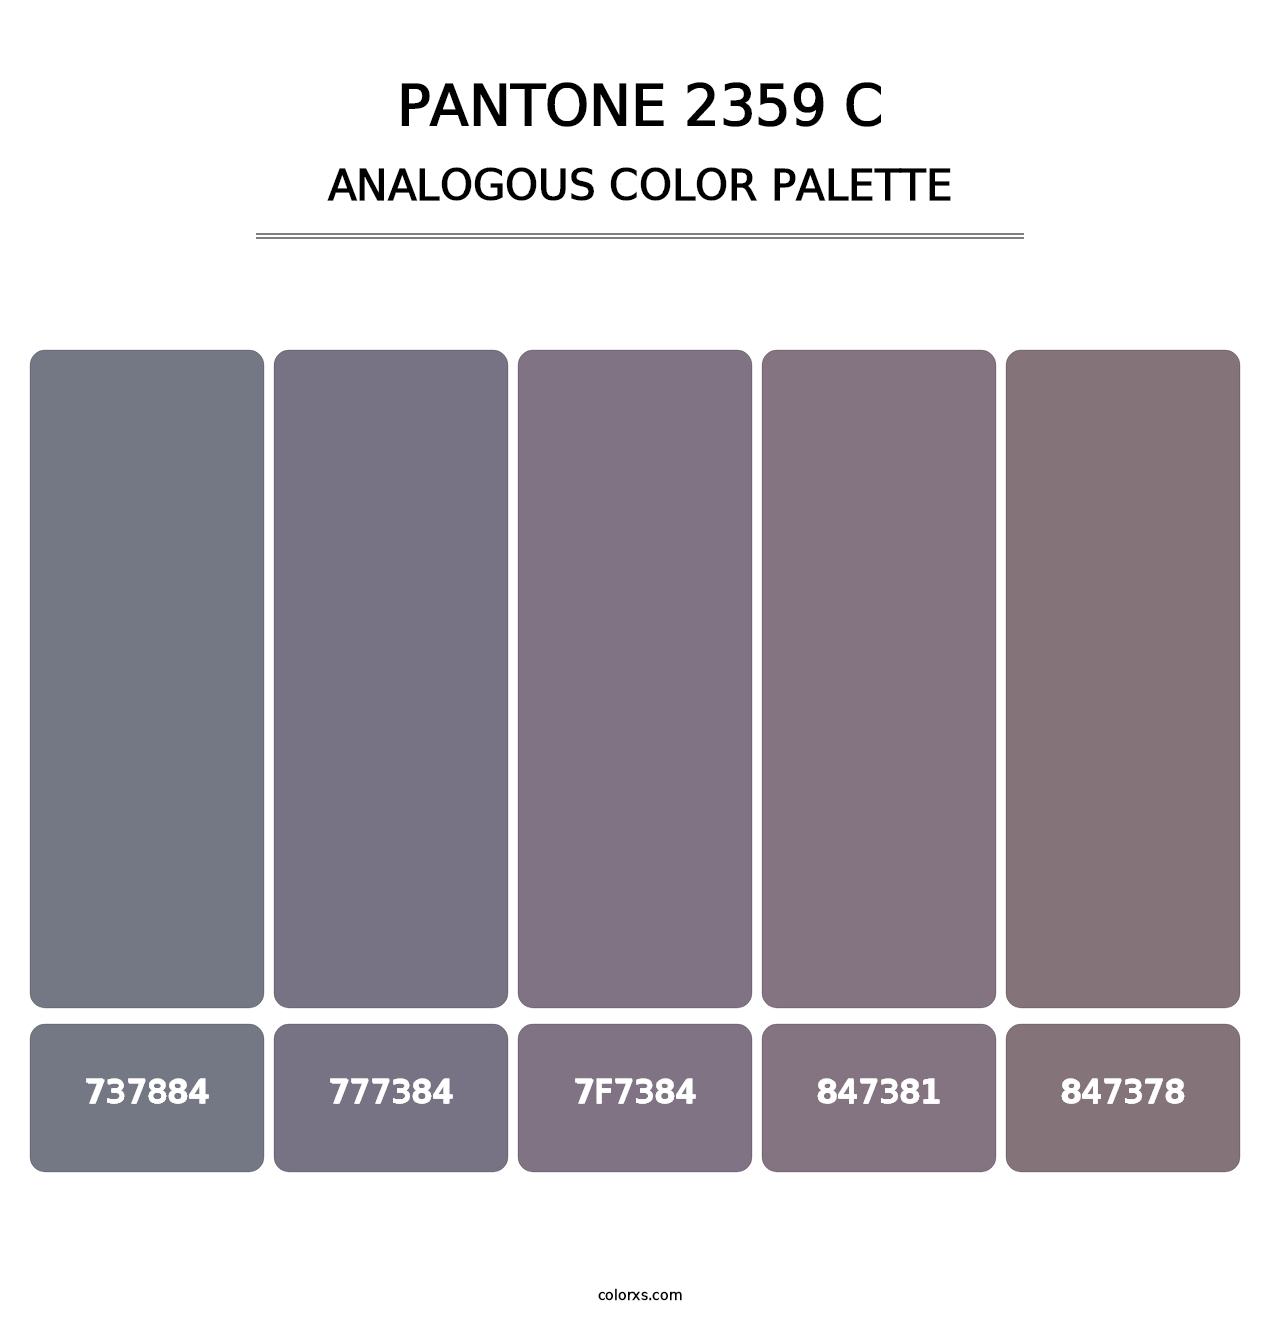 PANTONE 2359 C - Analogous Color Palette